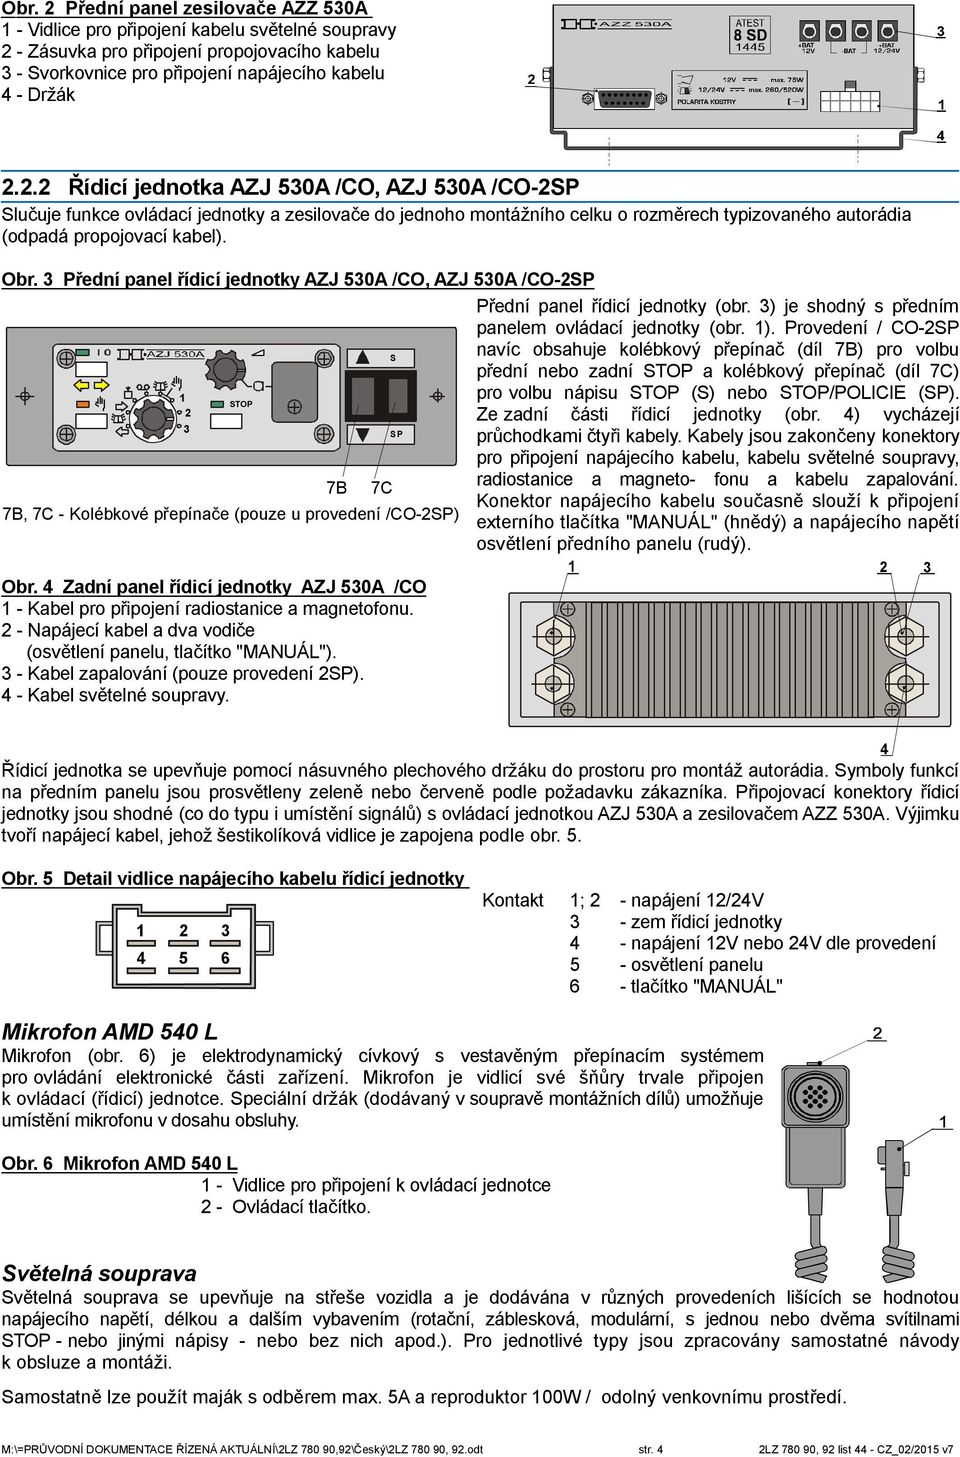 Provedení / CO-2SP 1 2 3 STOP 7B, 7C - Kolébkové přepínače (pouze u provedení /CO-2SP) Obr. 4 Zadní panel řídicí jednotky AZJ 530A /CO 1 - Kabel pro připojení radiostanice a magnetofonu.